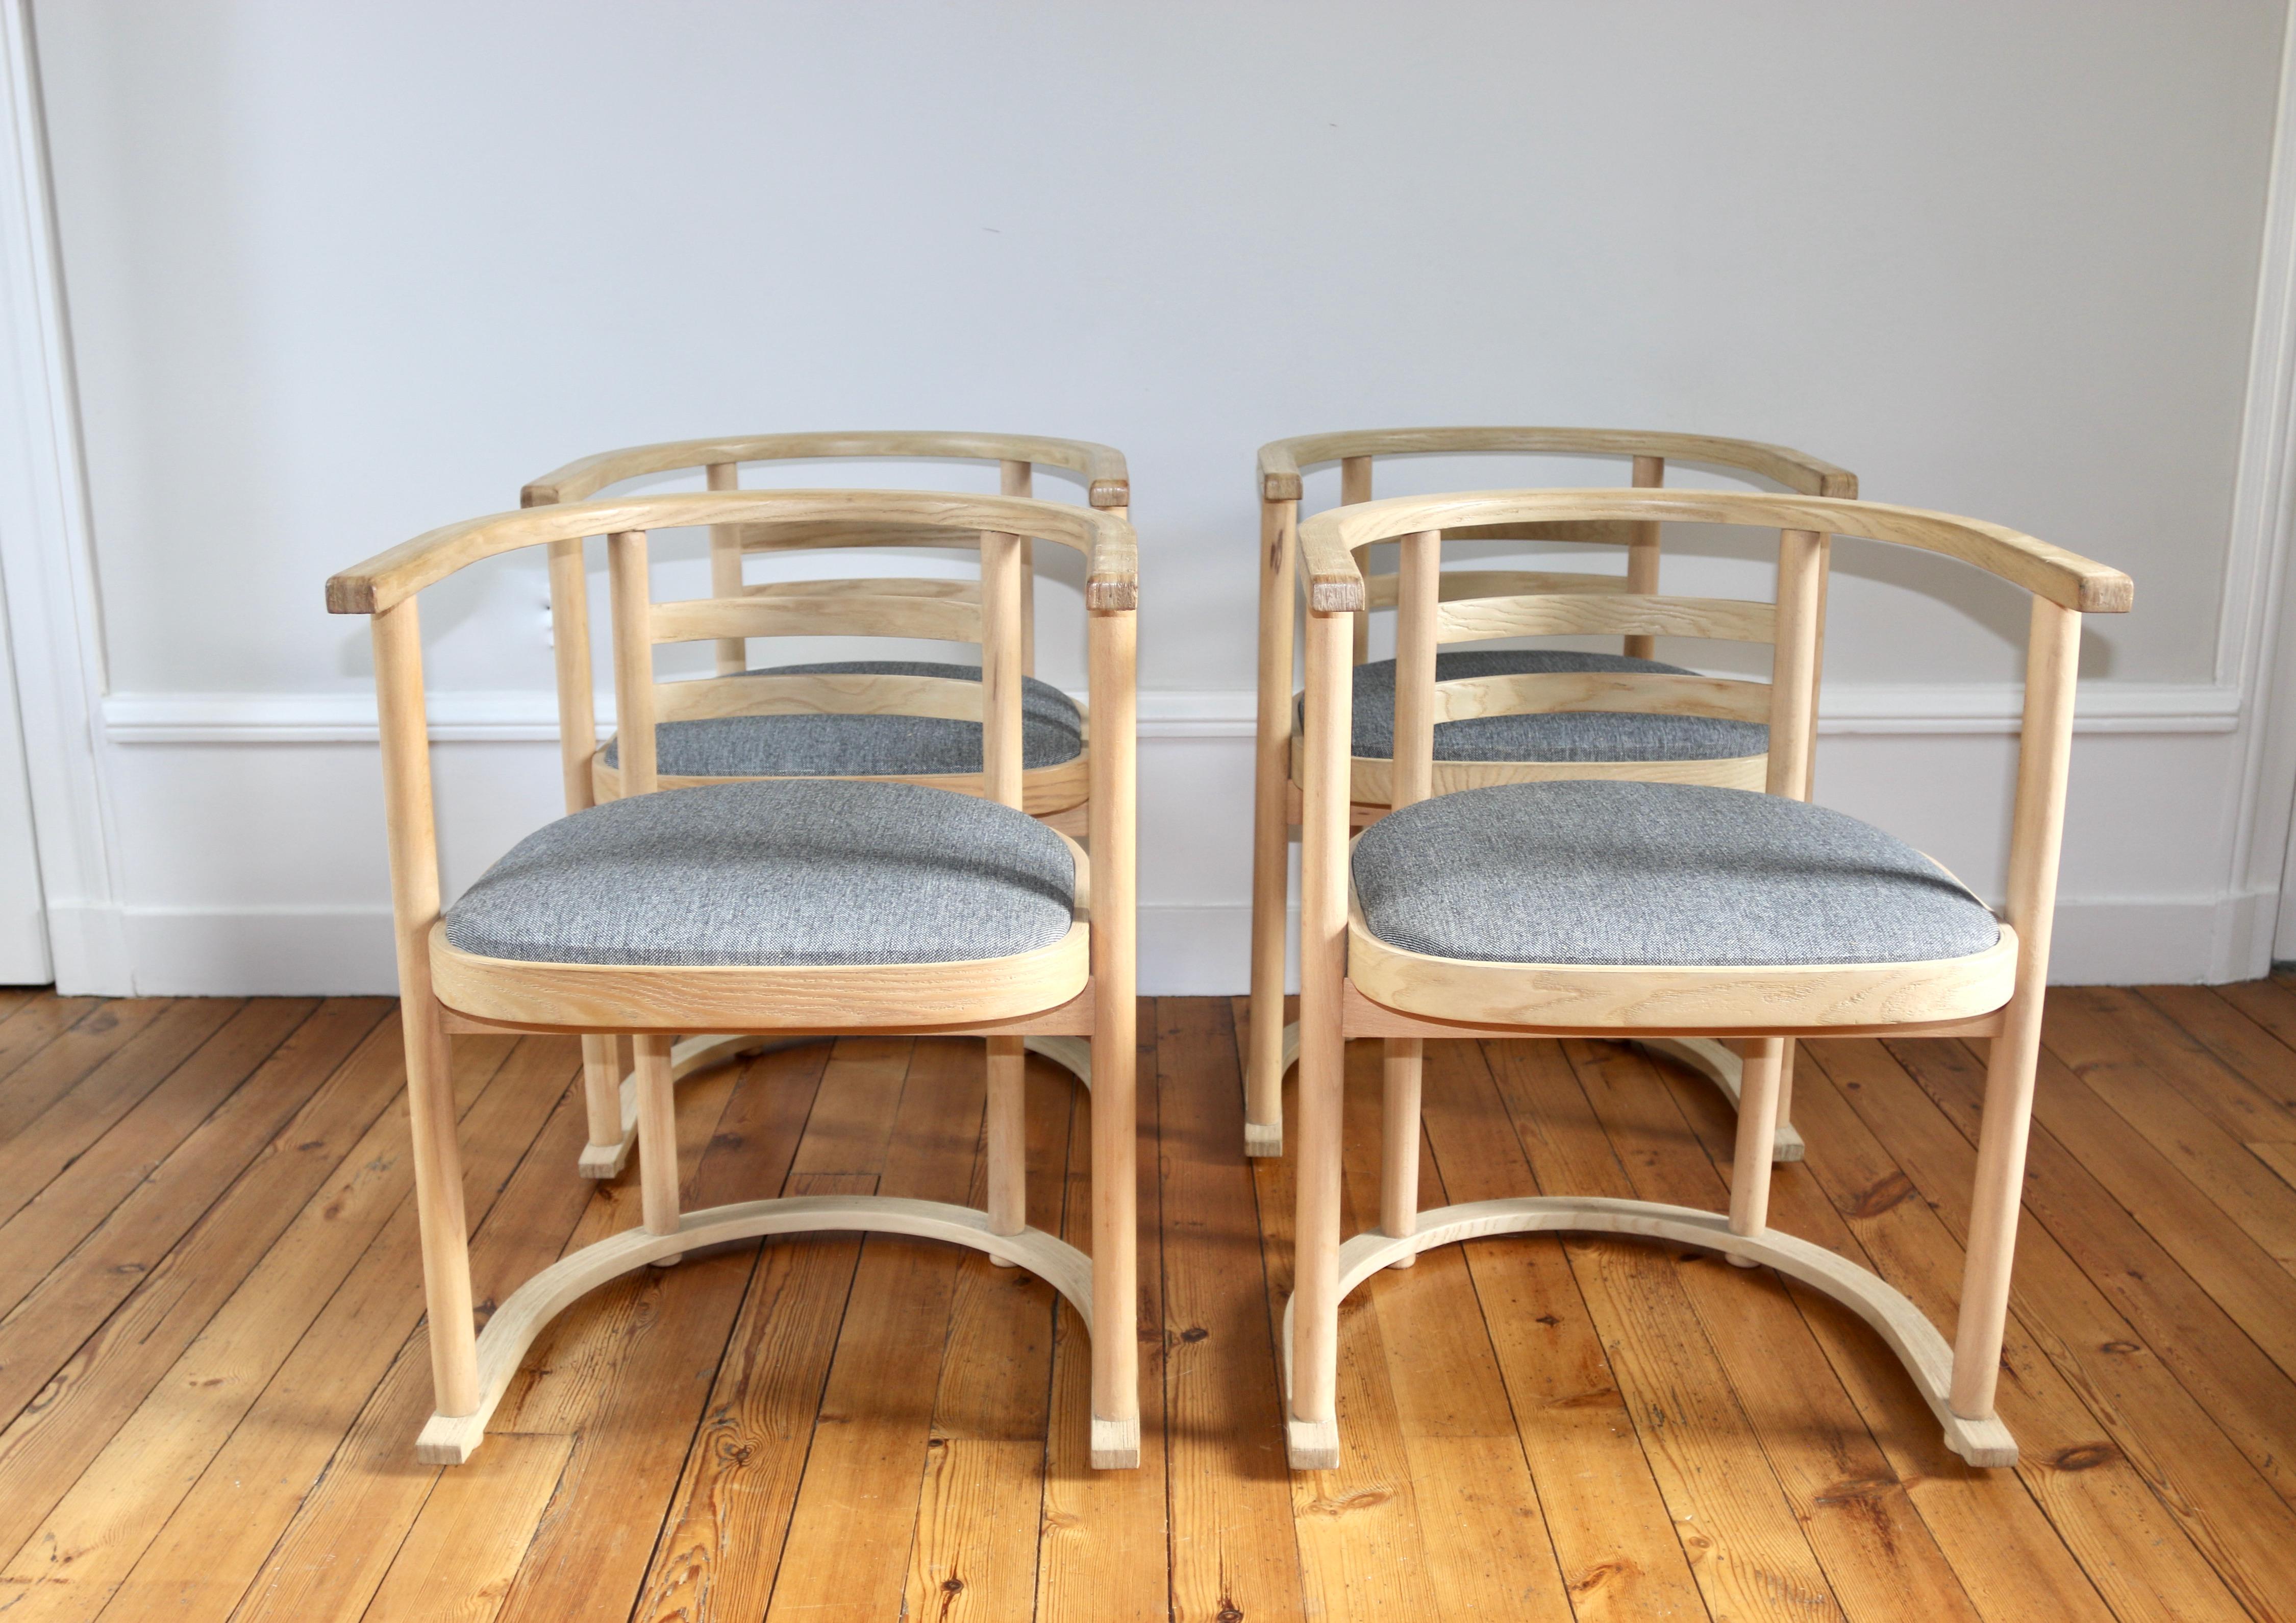 Série de 4 fauteuils/chaises Bauhaus vintage dans l'esprit de celle fabriquée par Josef Hoffman pour Thonet
celle-ci ont été fabriquées au Danemark

Assises refaites en tissu gris chiné par un tapissier (mousse et tissu)

Abmessungen : profondeur 48